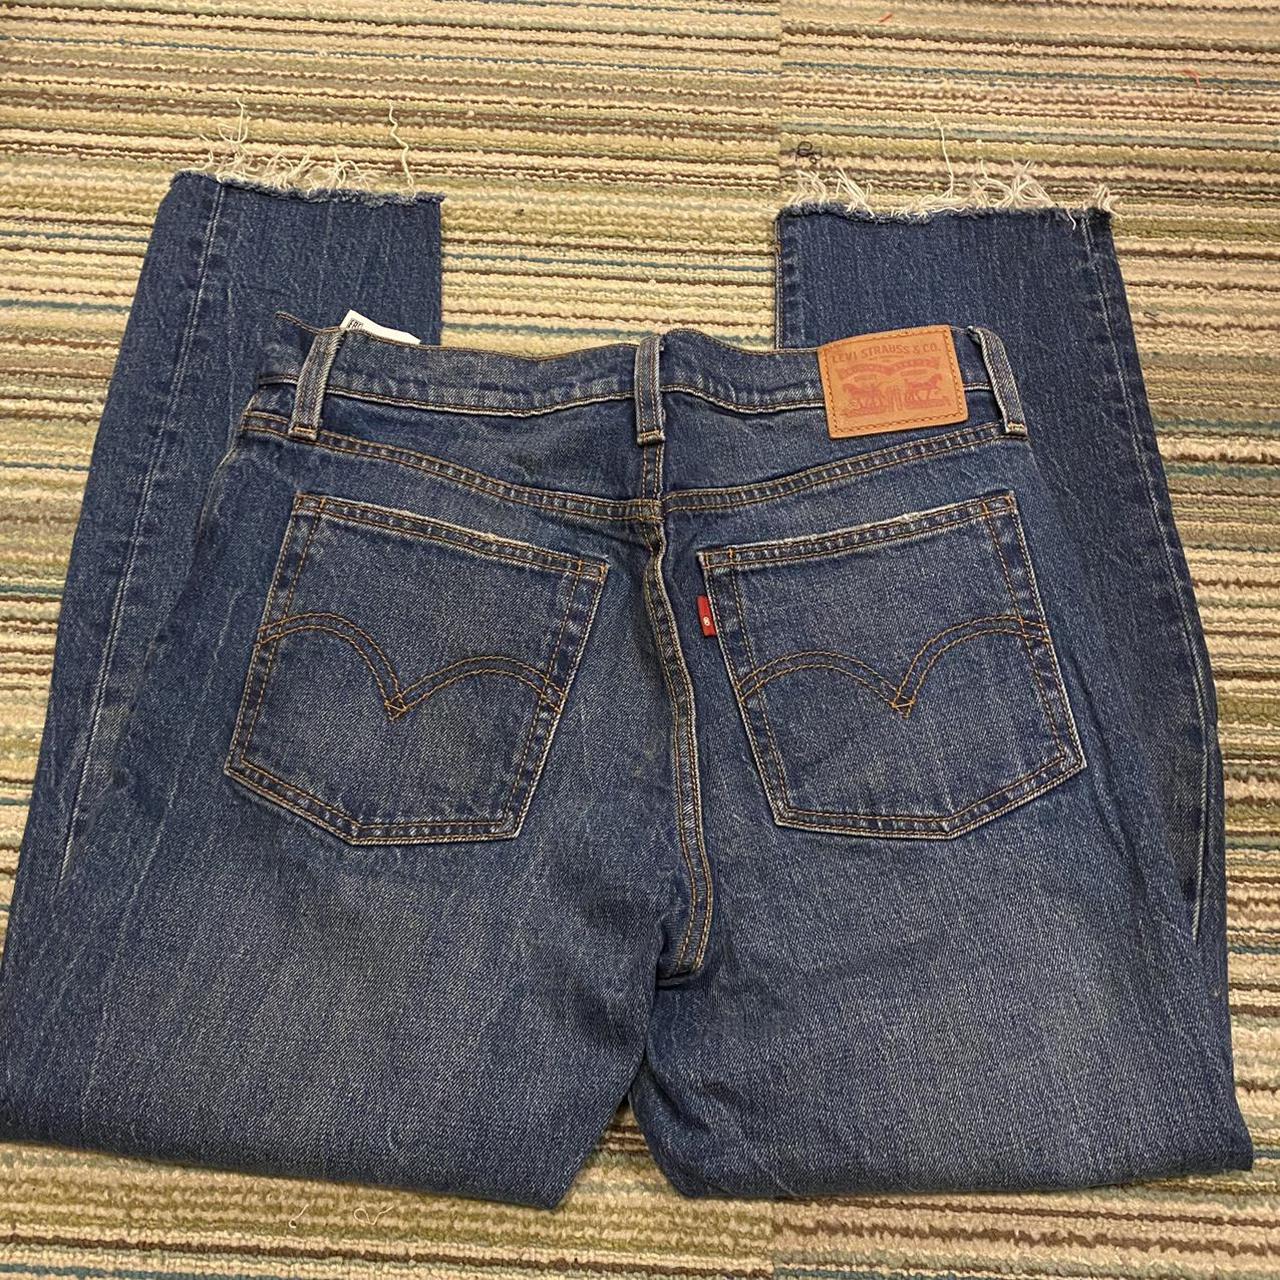 27 inch waist Levis medium wash jeans 501 - Depop